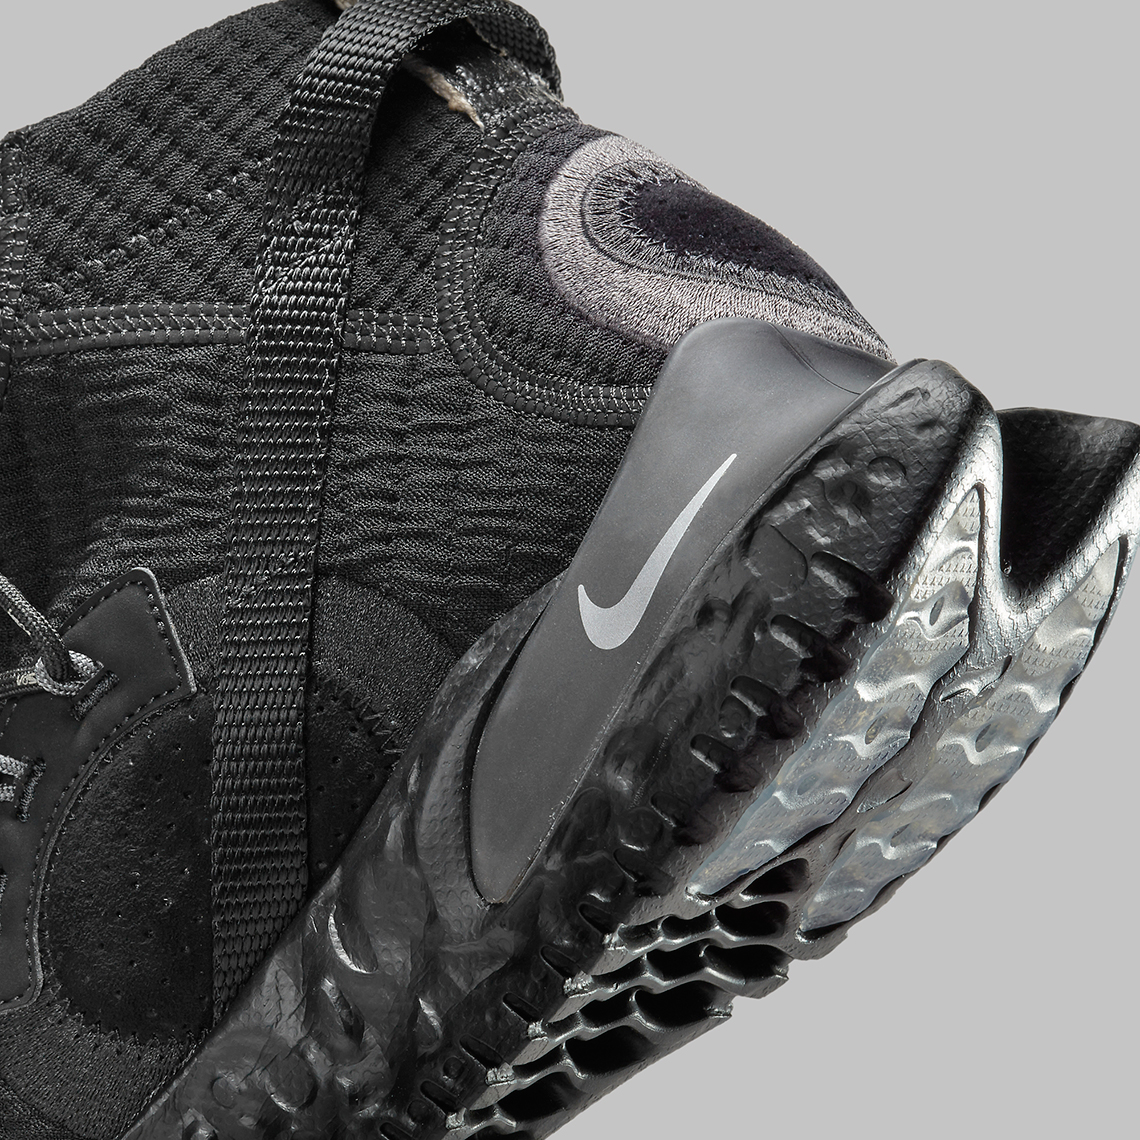 Nike Ispa Flow 2020 Se Black Cw3045 002 Release Date 8